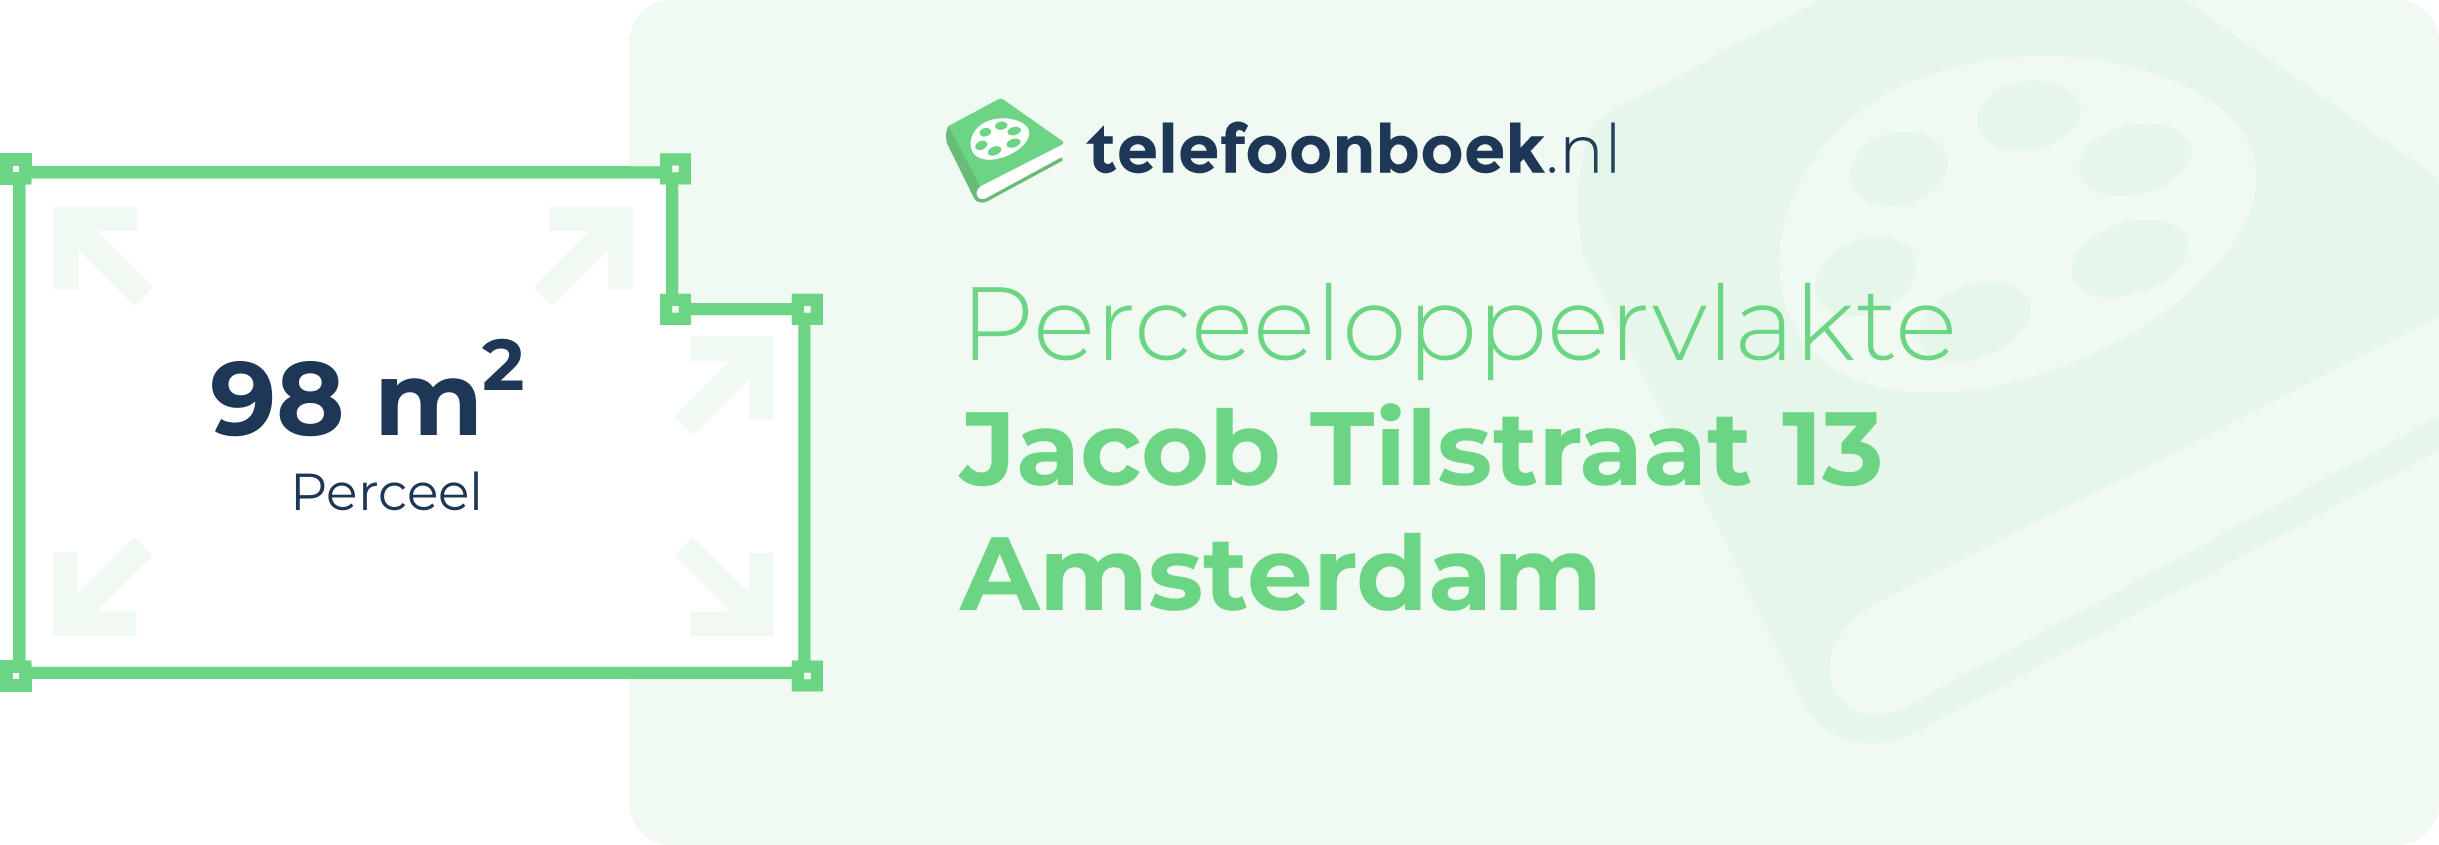 Perceeloppervlakte Jacob Tilstraat 13 Amsterdam